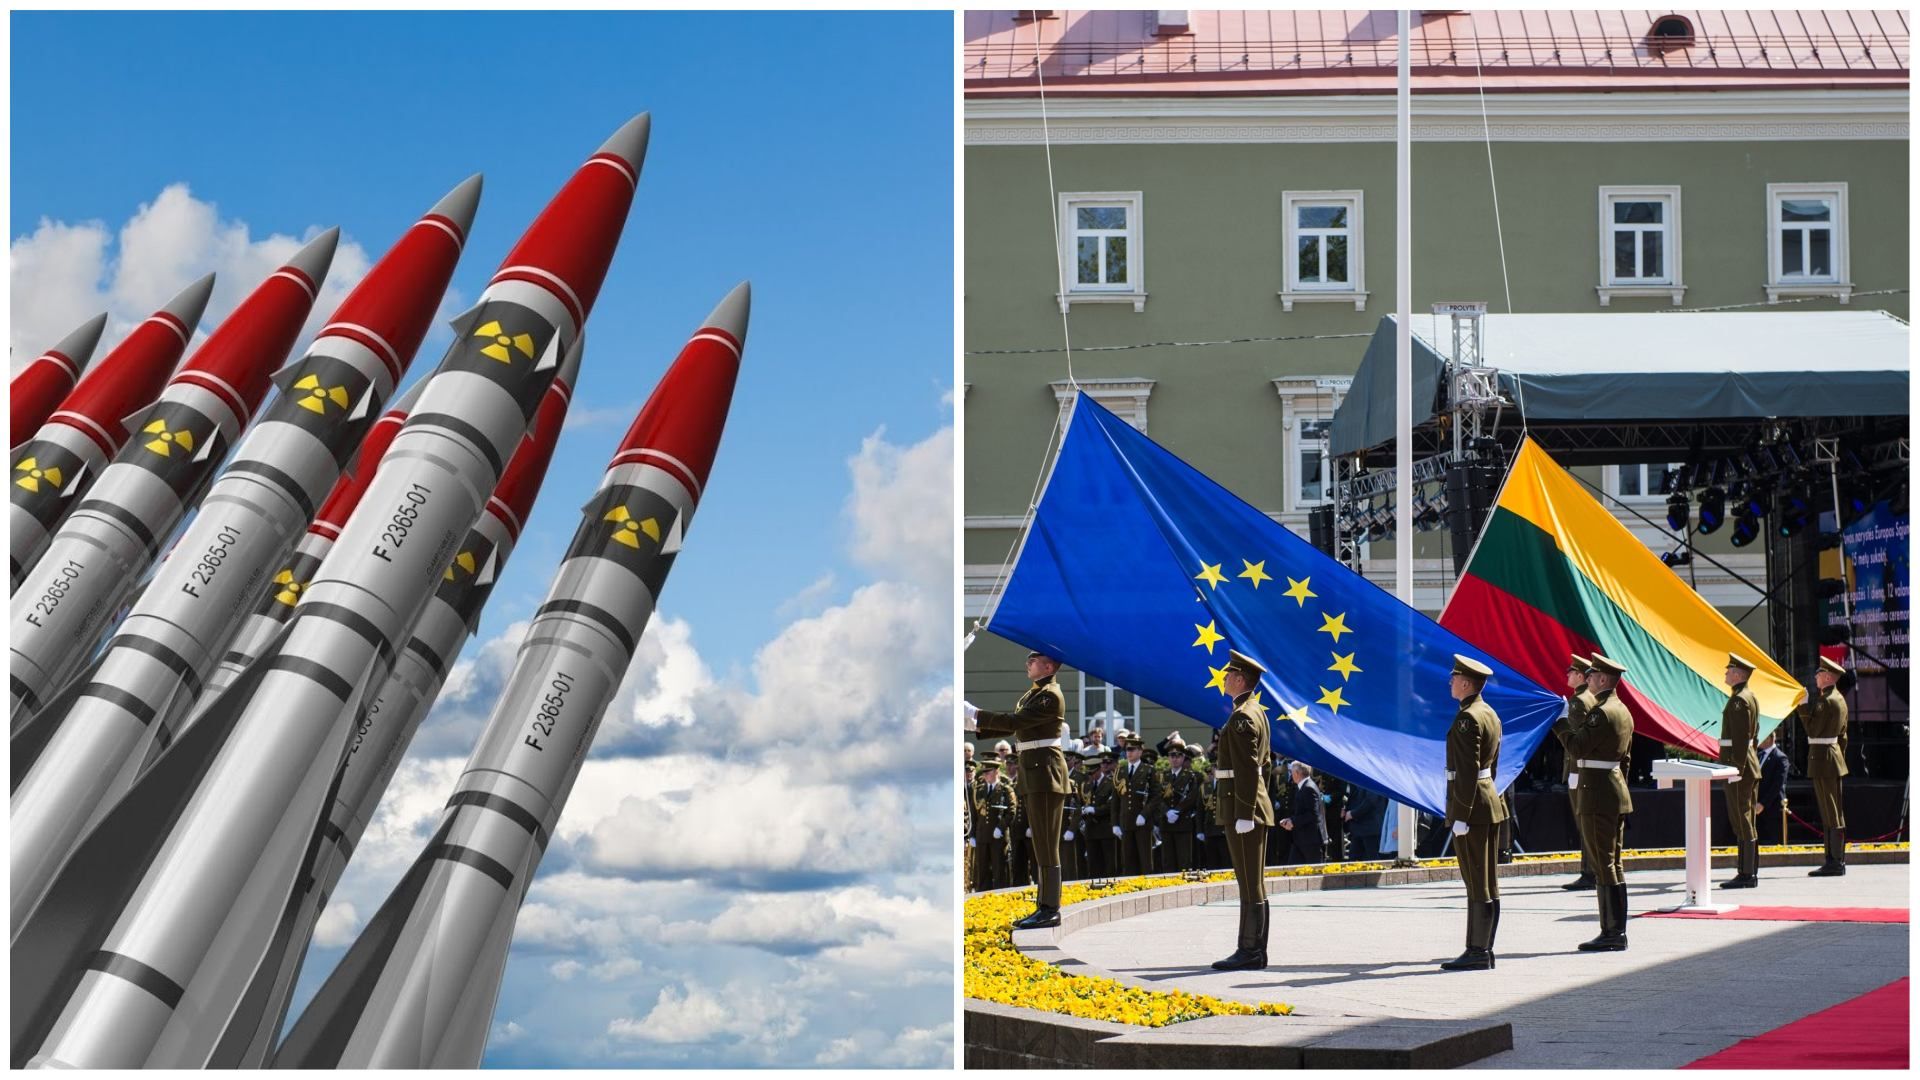 МИД Литвы не просило США о ядерном оружии, это сделали хакеры
